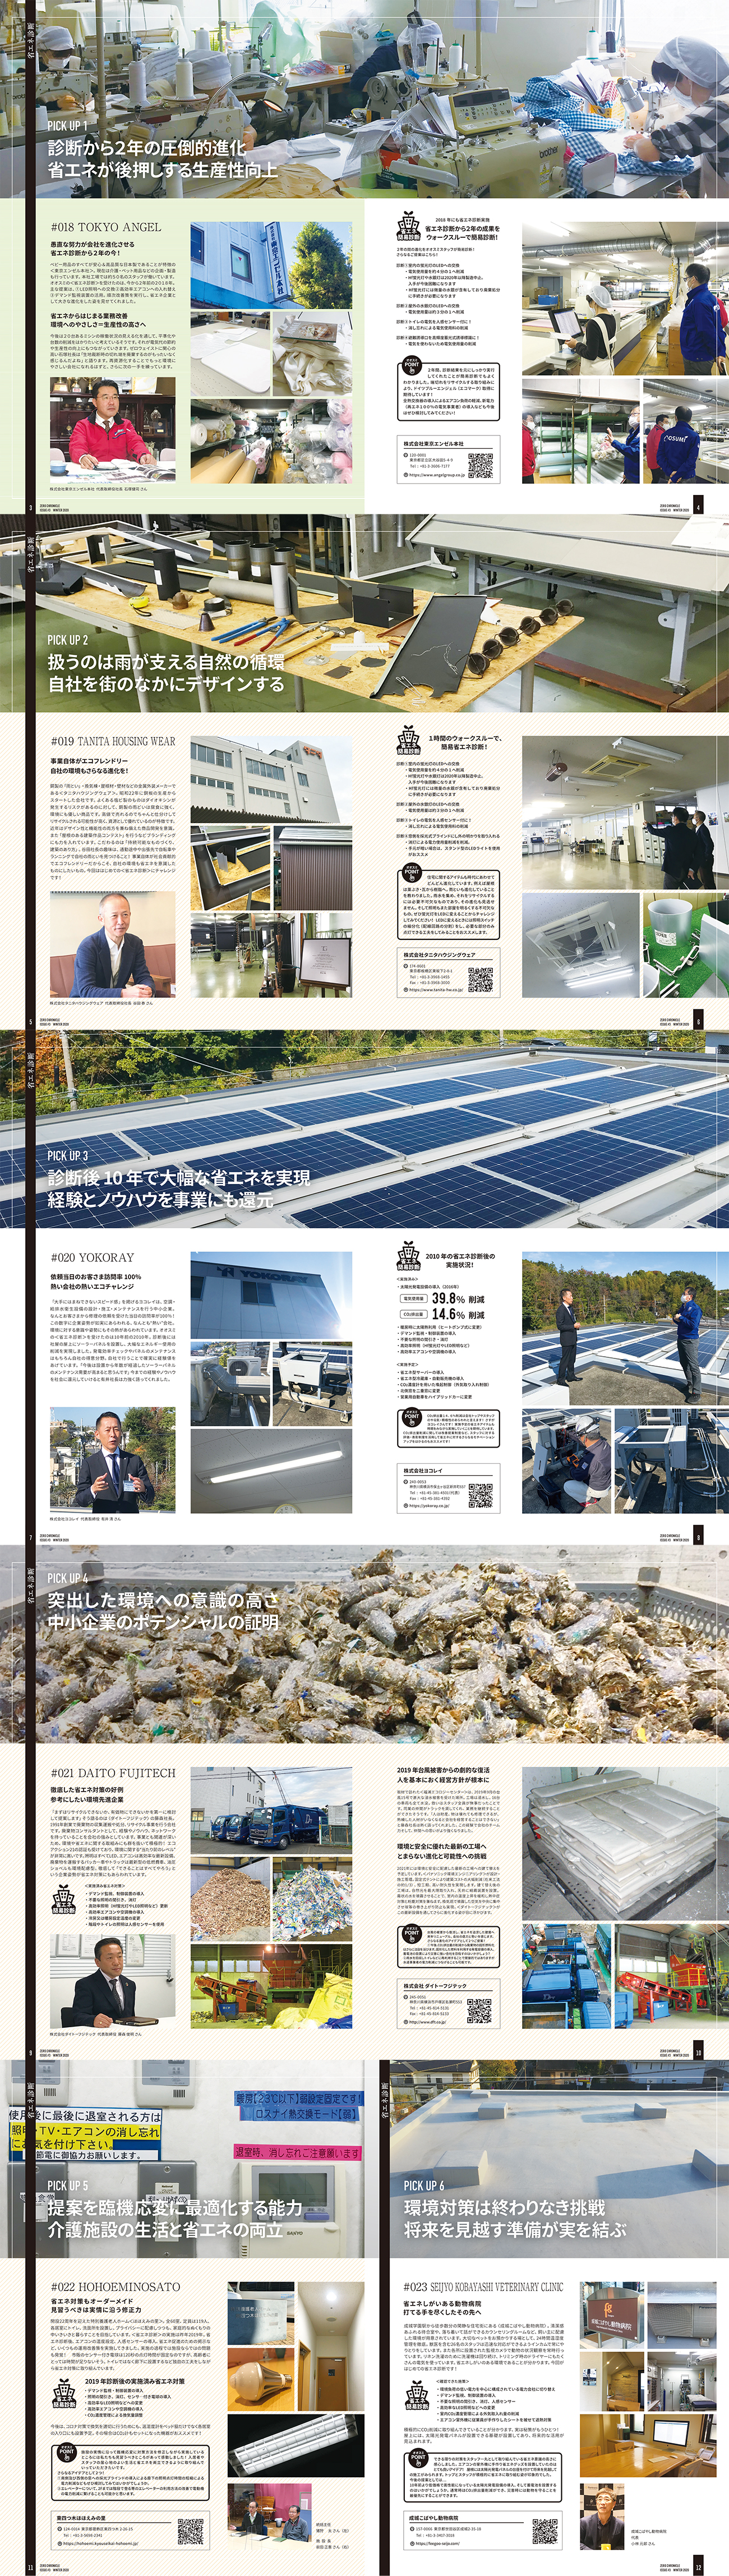 ミッションは「持続可能社会の実現」　環境戦略で日本の未来を切り拓く